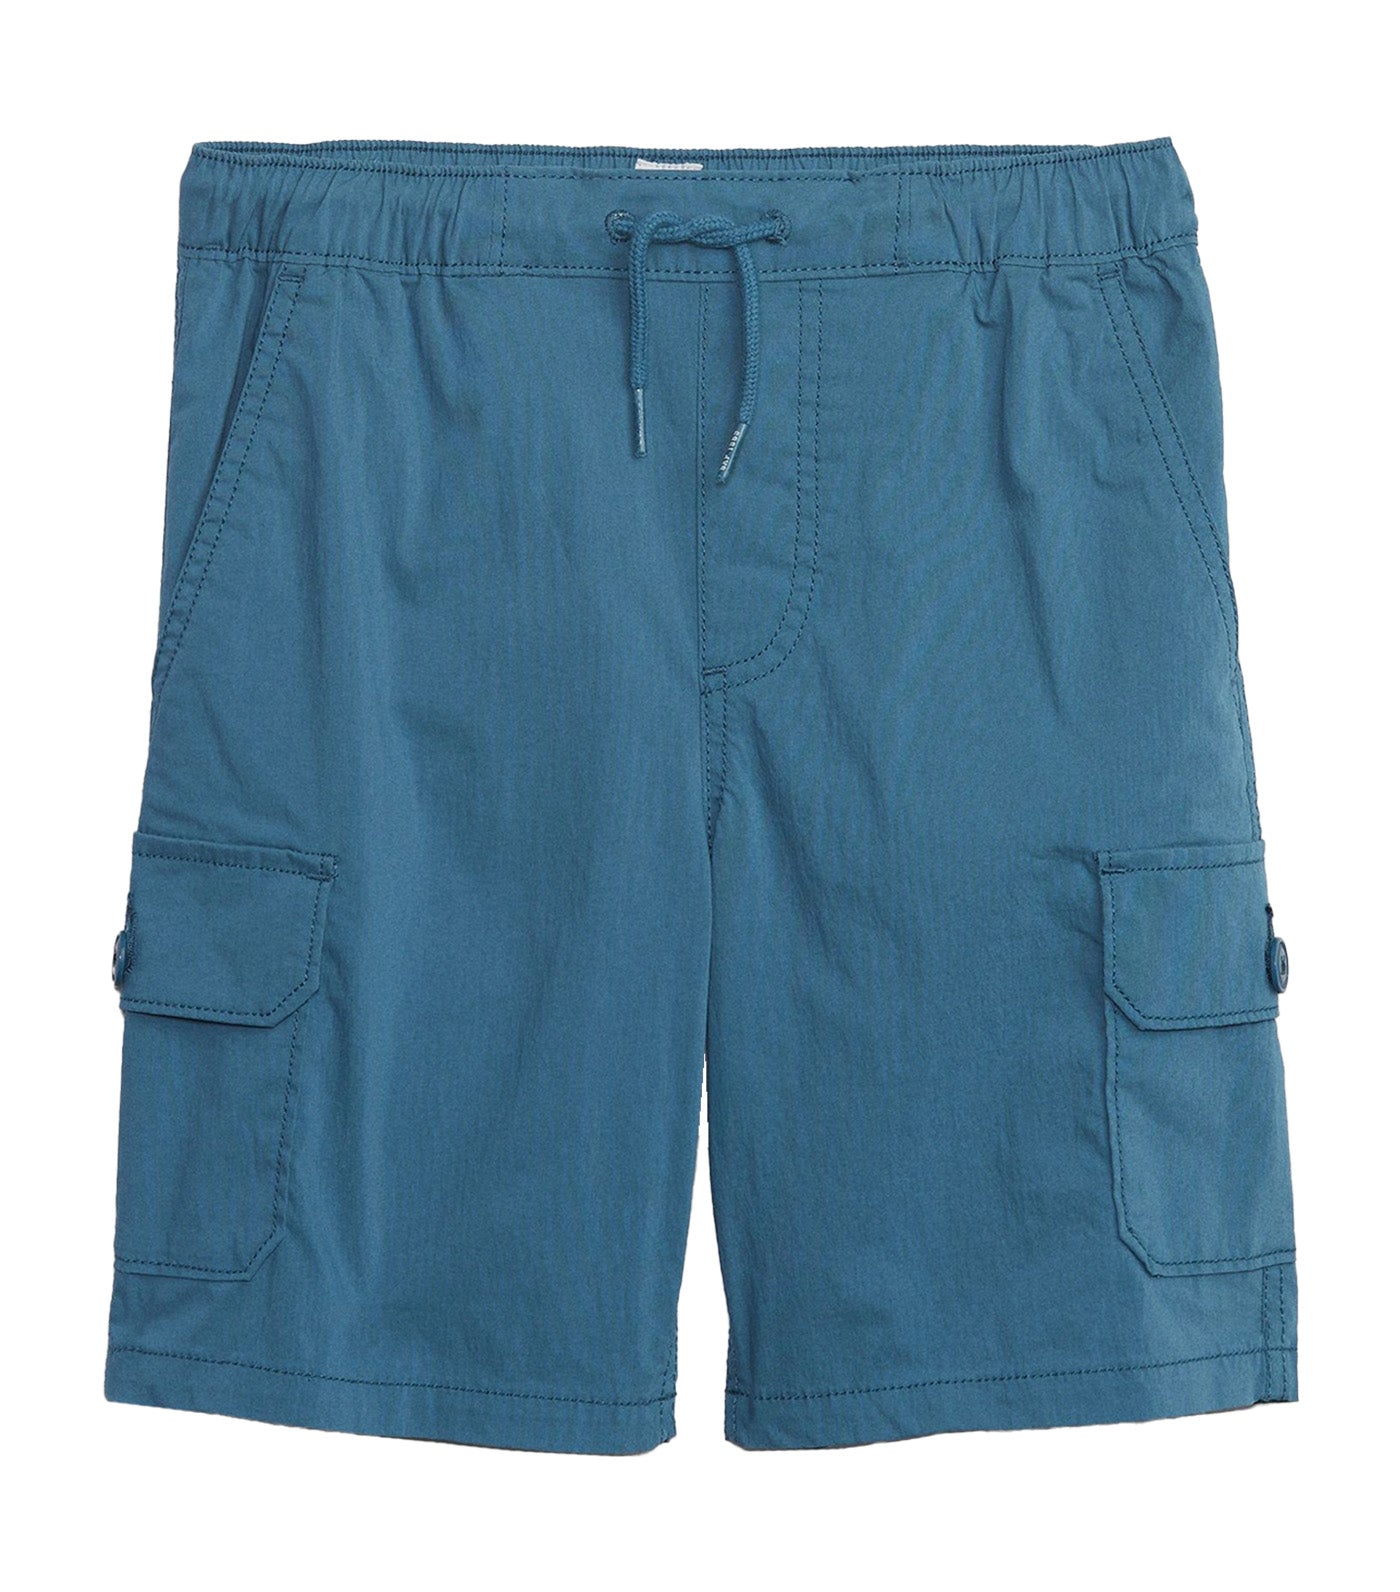 Hybrid Cargo Shorts with Washwell - Blue Shade